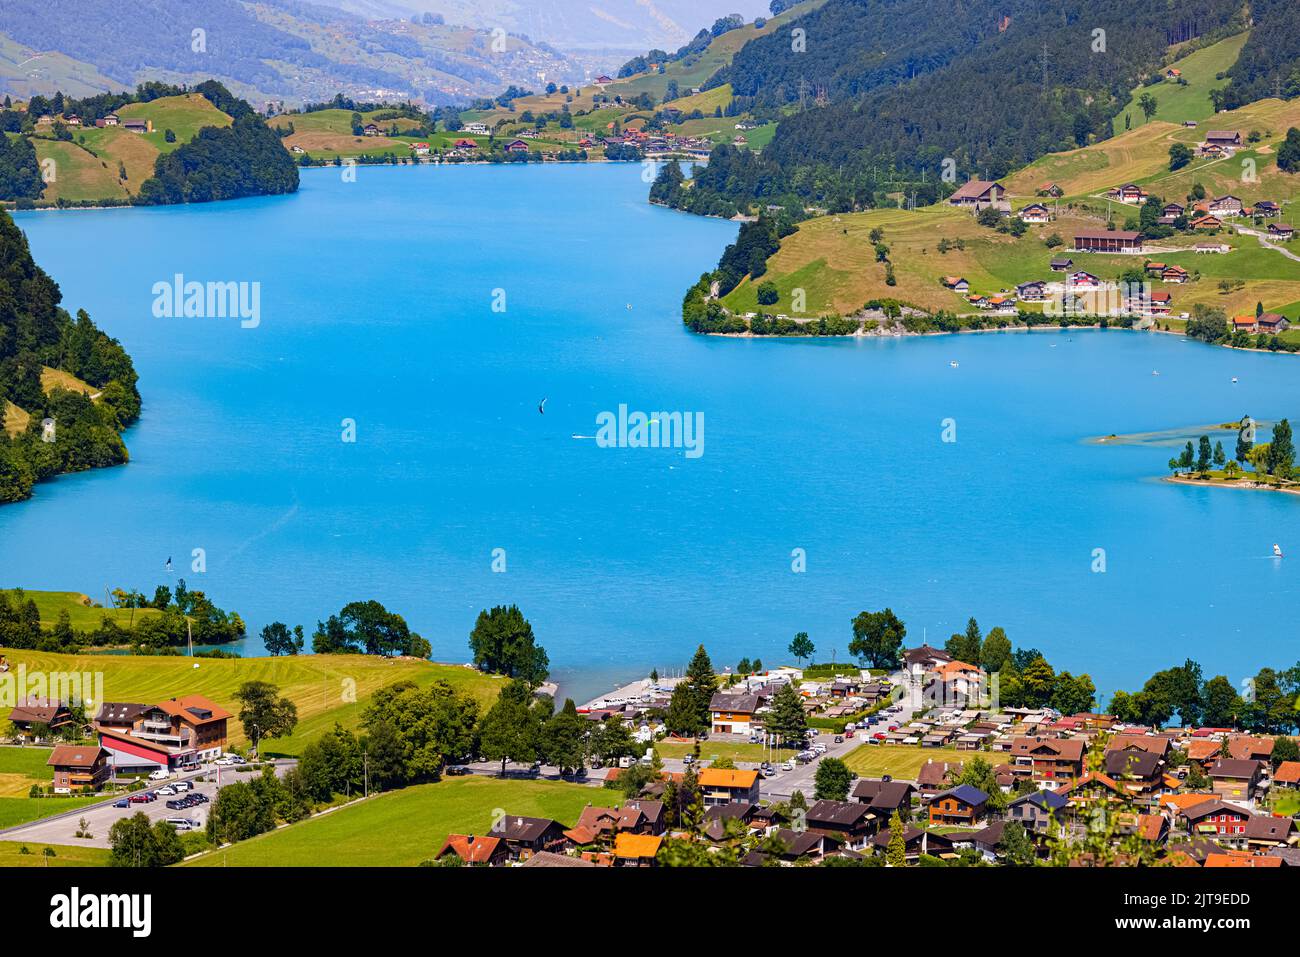 El famoso punto de vista Chalrutirank con vistas a Lungern, un municipio y lugar en el cantón suizo de Obwalden. Lungern está situado en el lago Lungern An Foto de stock